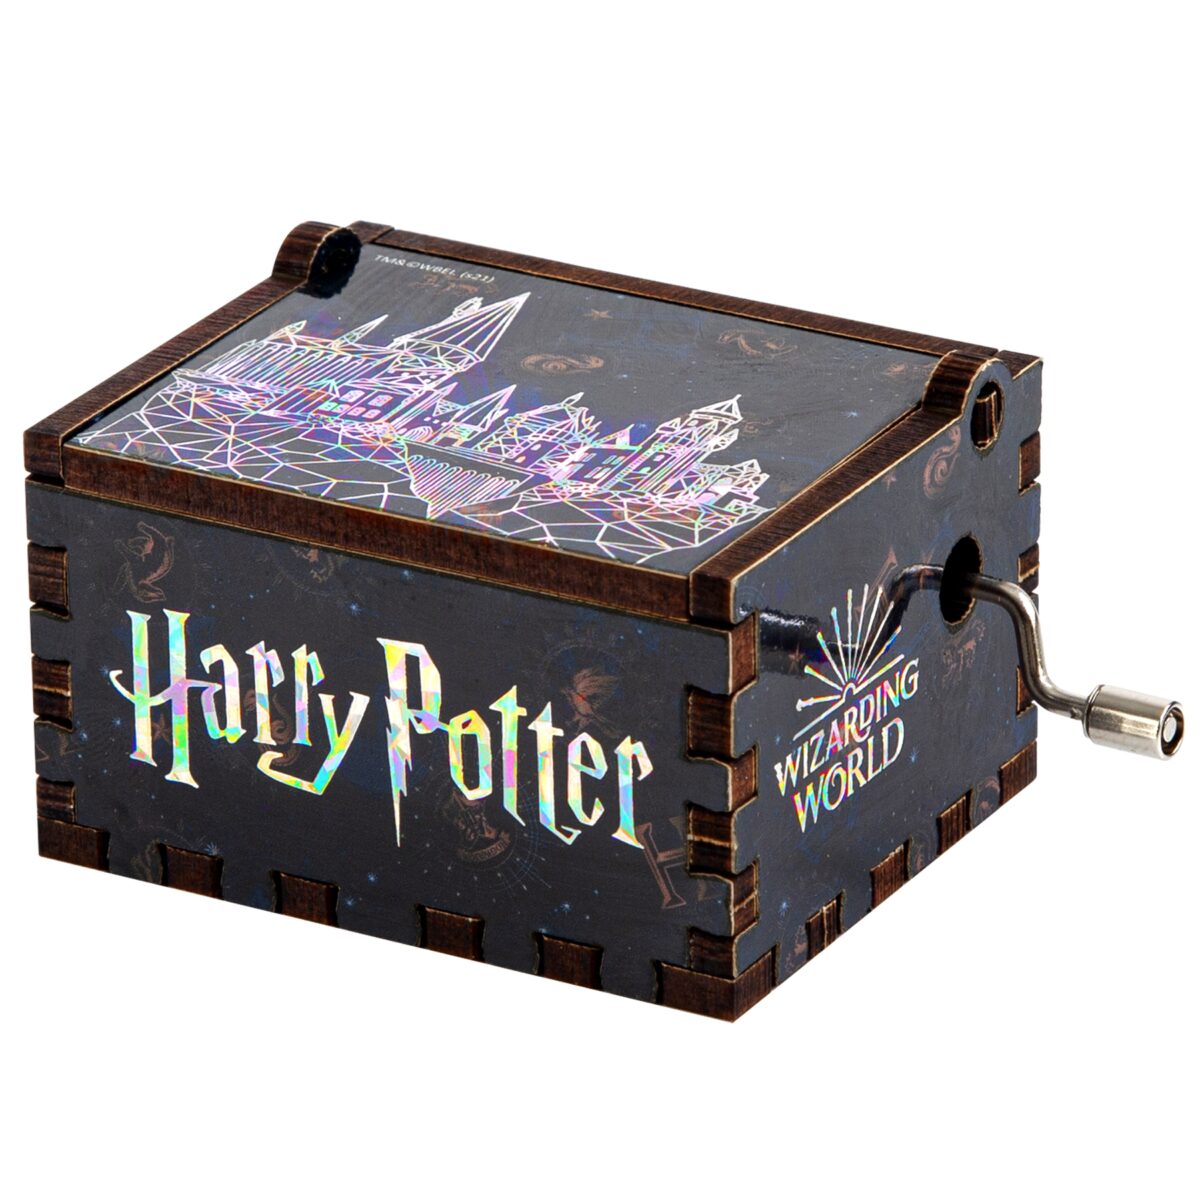 p1 28.07.2021 d07fb1a Sihir Dükkanı - Tüm Harry Potter Ürünleri